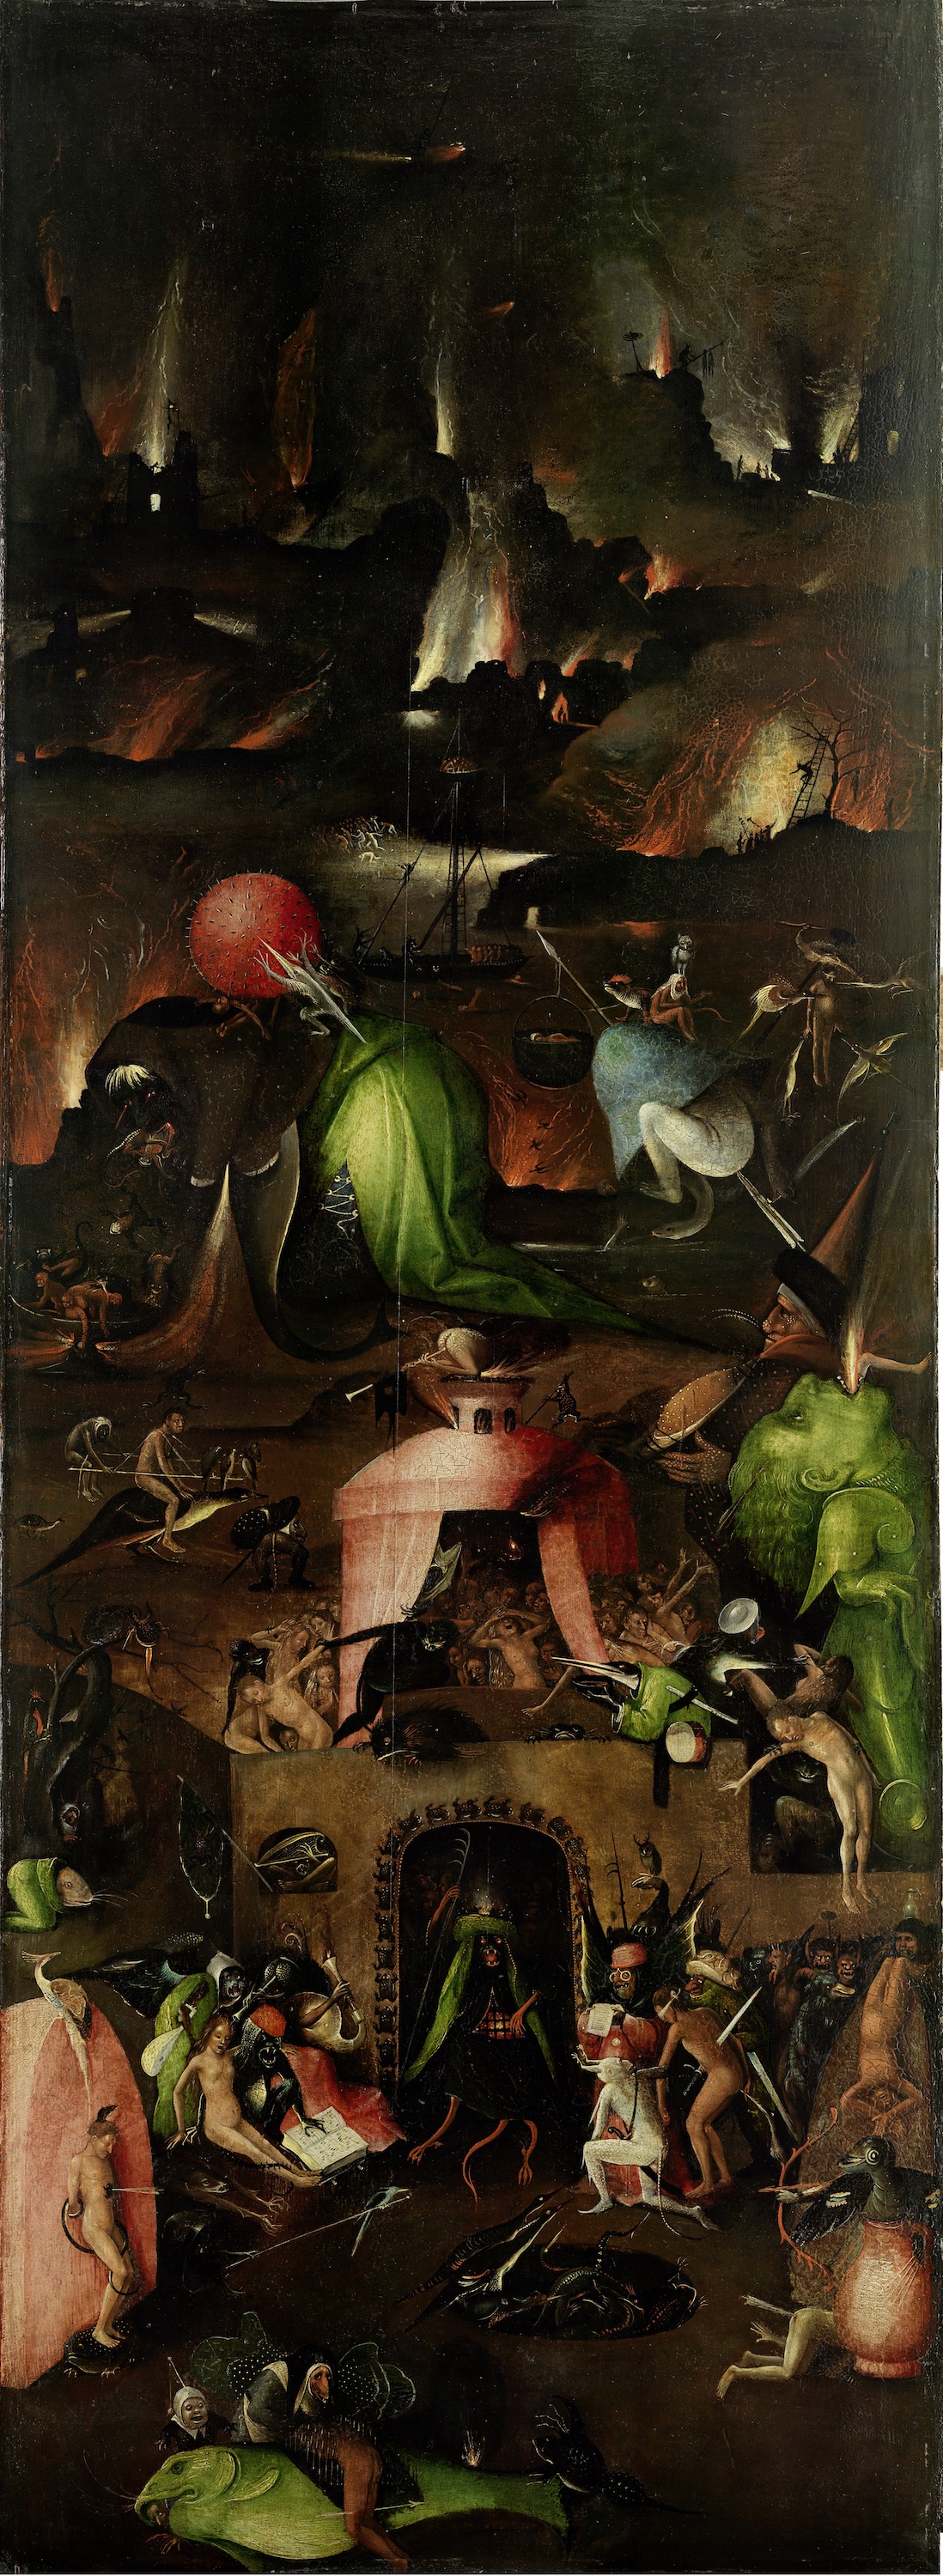 “最後的審判”三聯畫 - 右翼 by Hieronymus Bosch - c. 1500 - 167.7 x 60 cm 